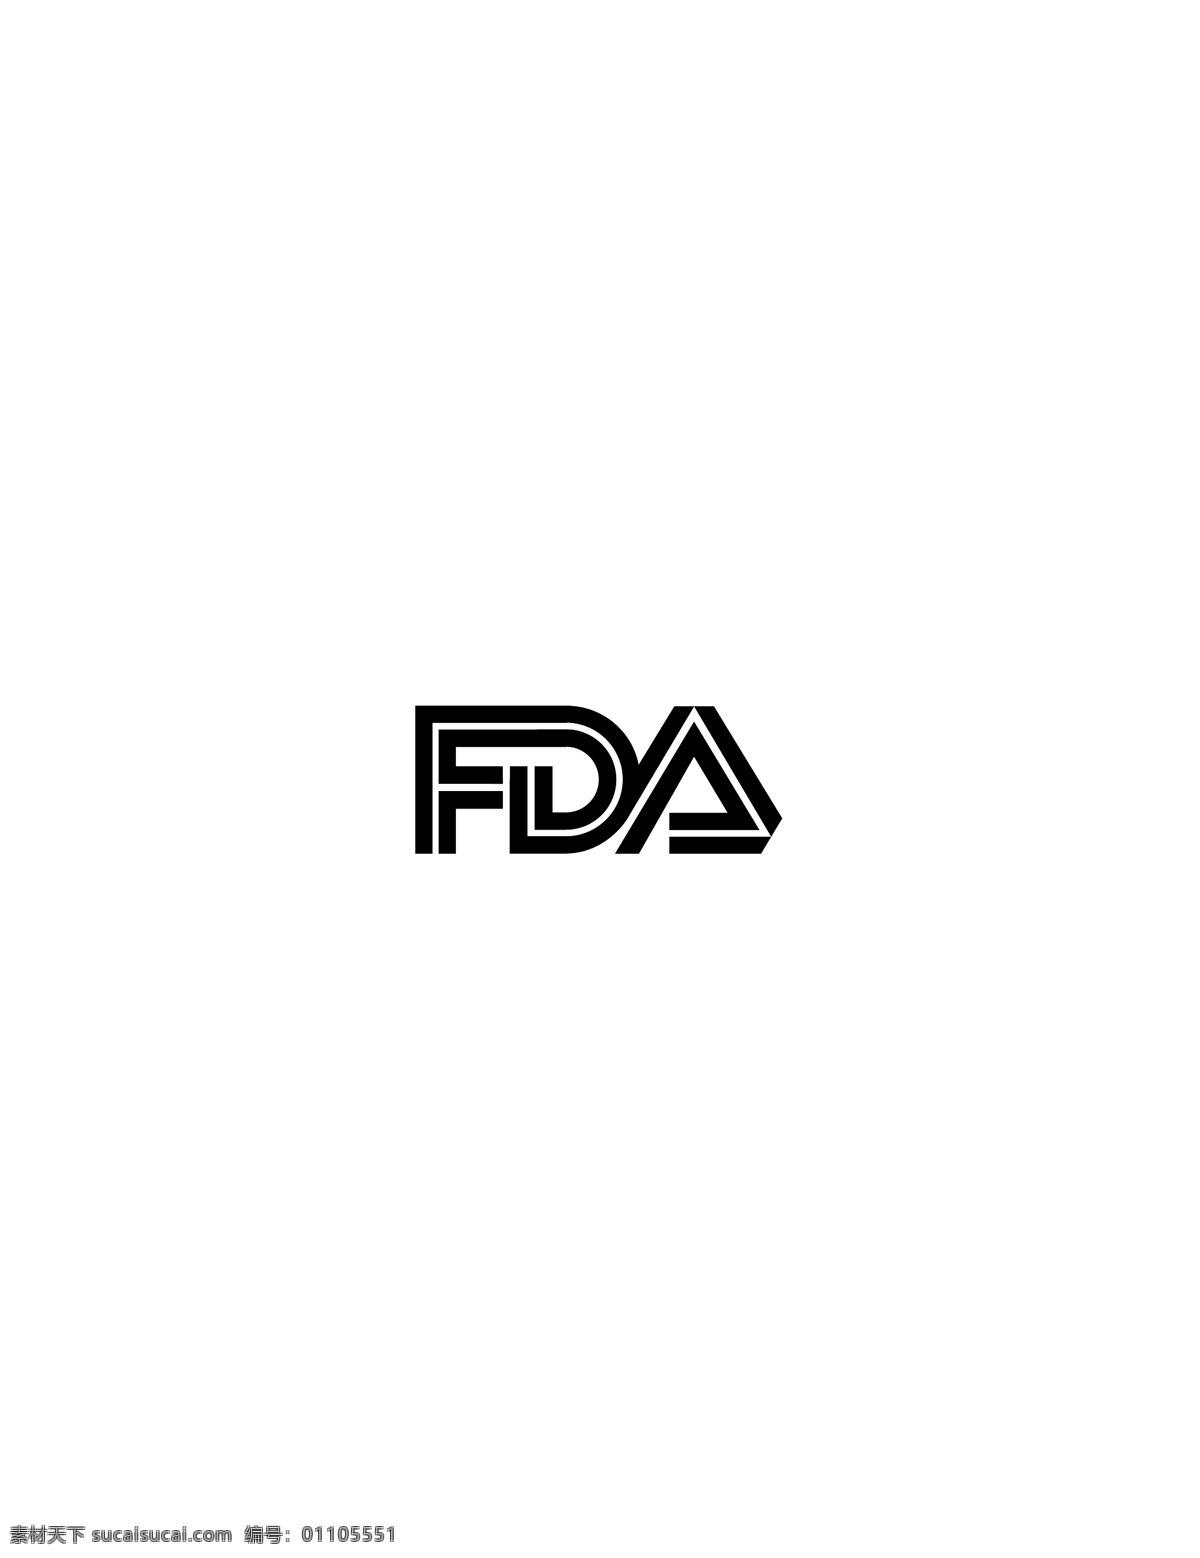 fda logo大全 logo 设计欣赏 商业矢量 矢量下载 名牌 饮料 标志 标志设计 欣赏 网页矢量 矢量图 其他矢量图